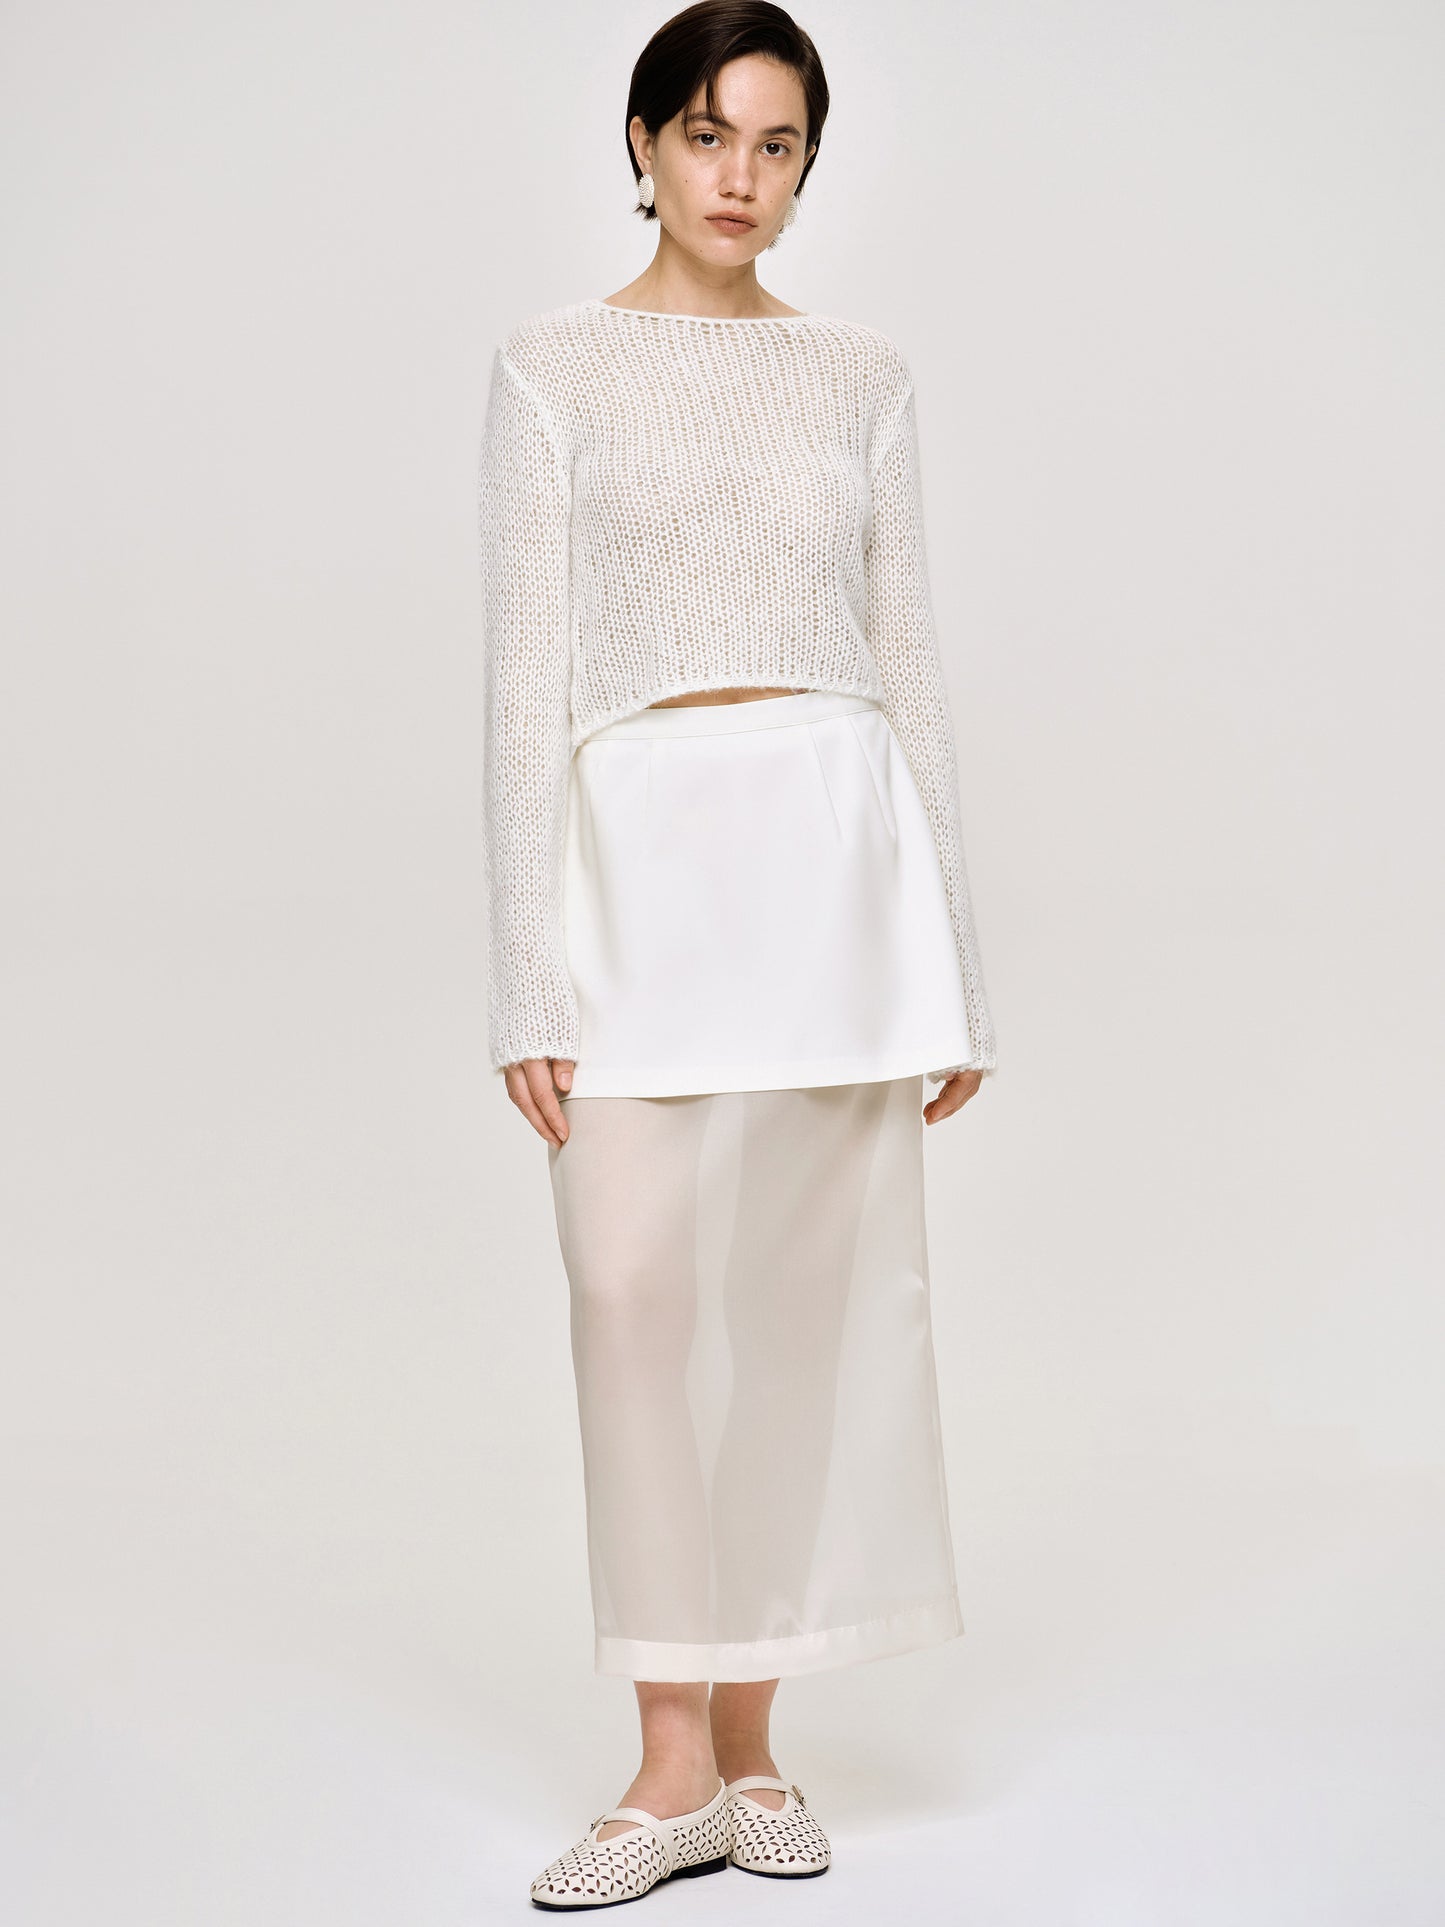 Sheer Midi Skirt, White